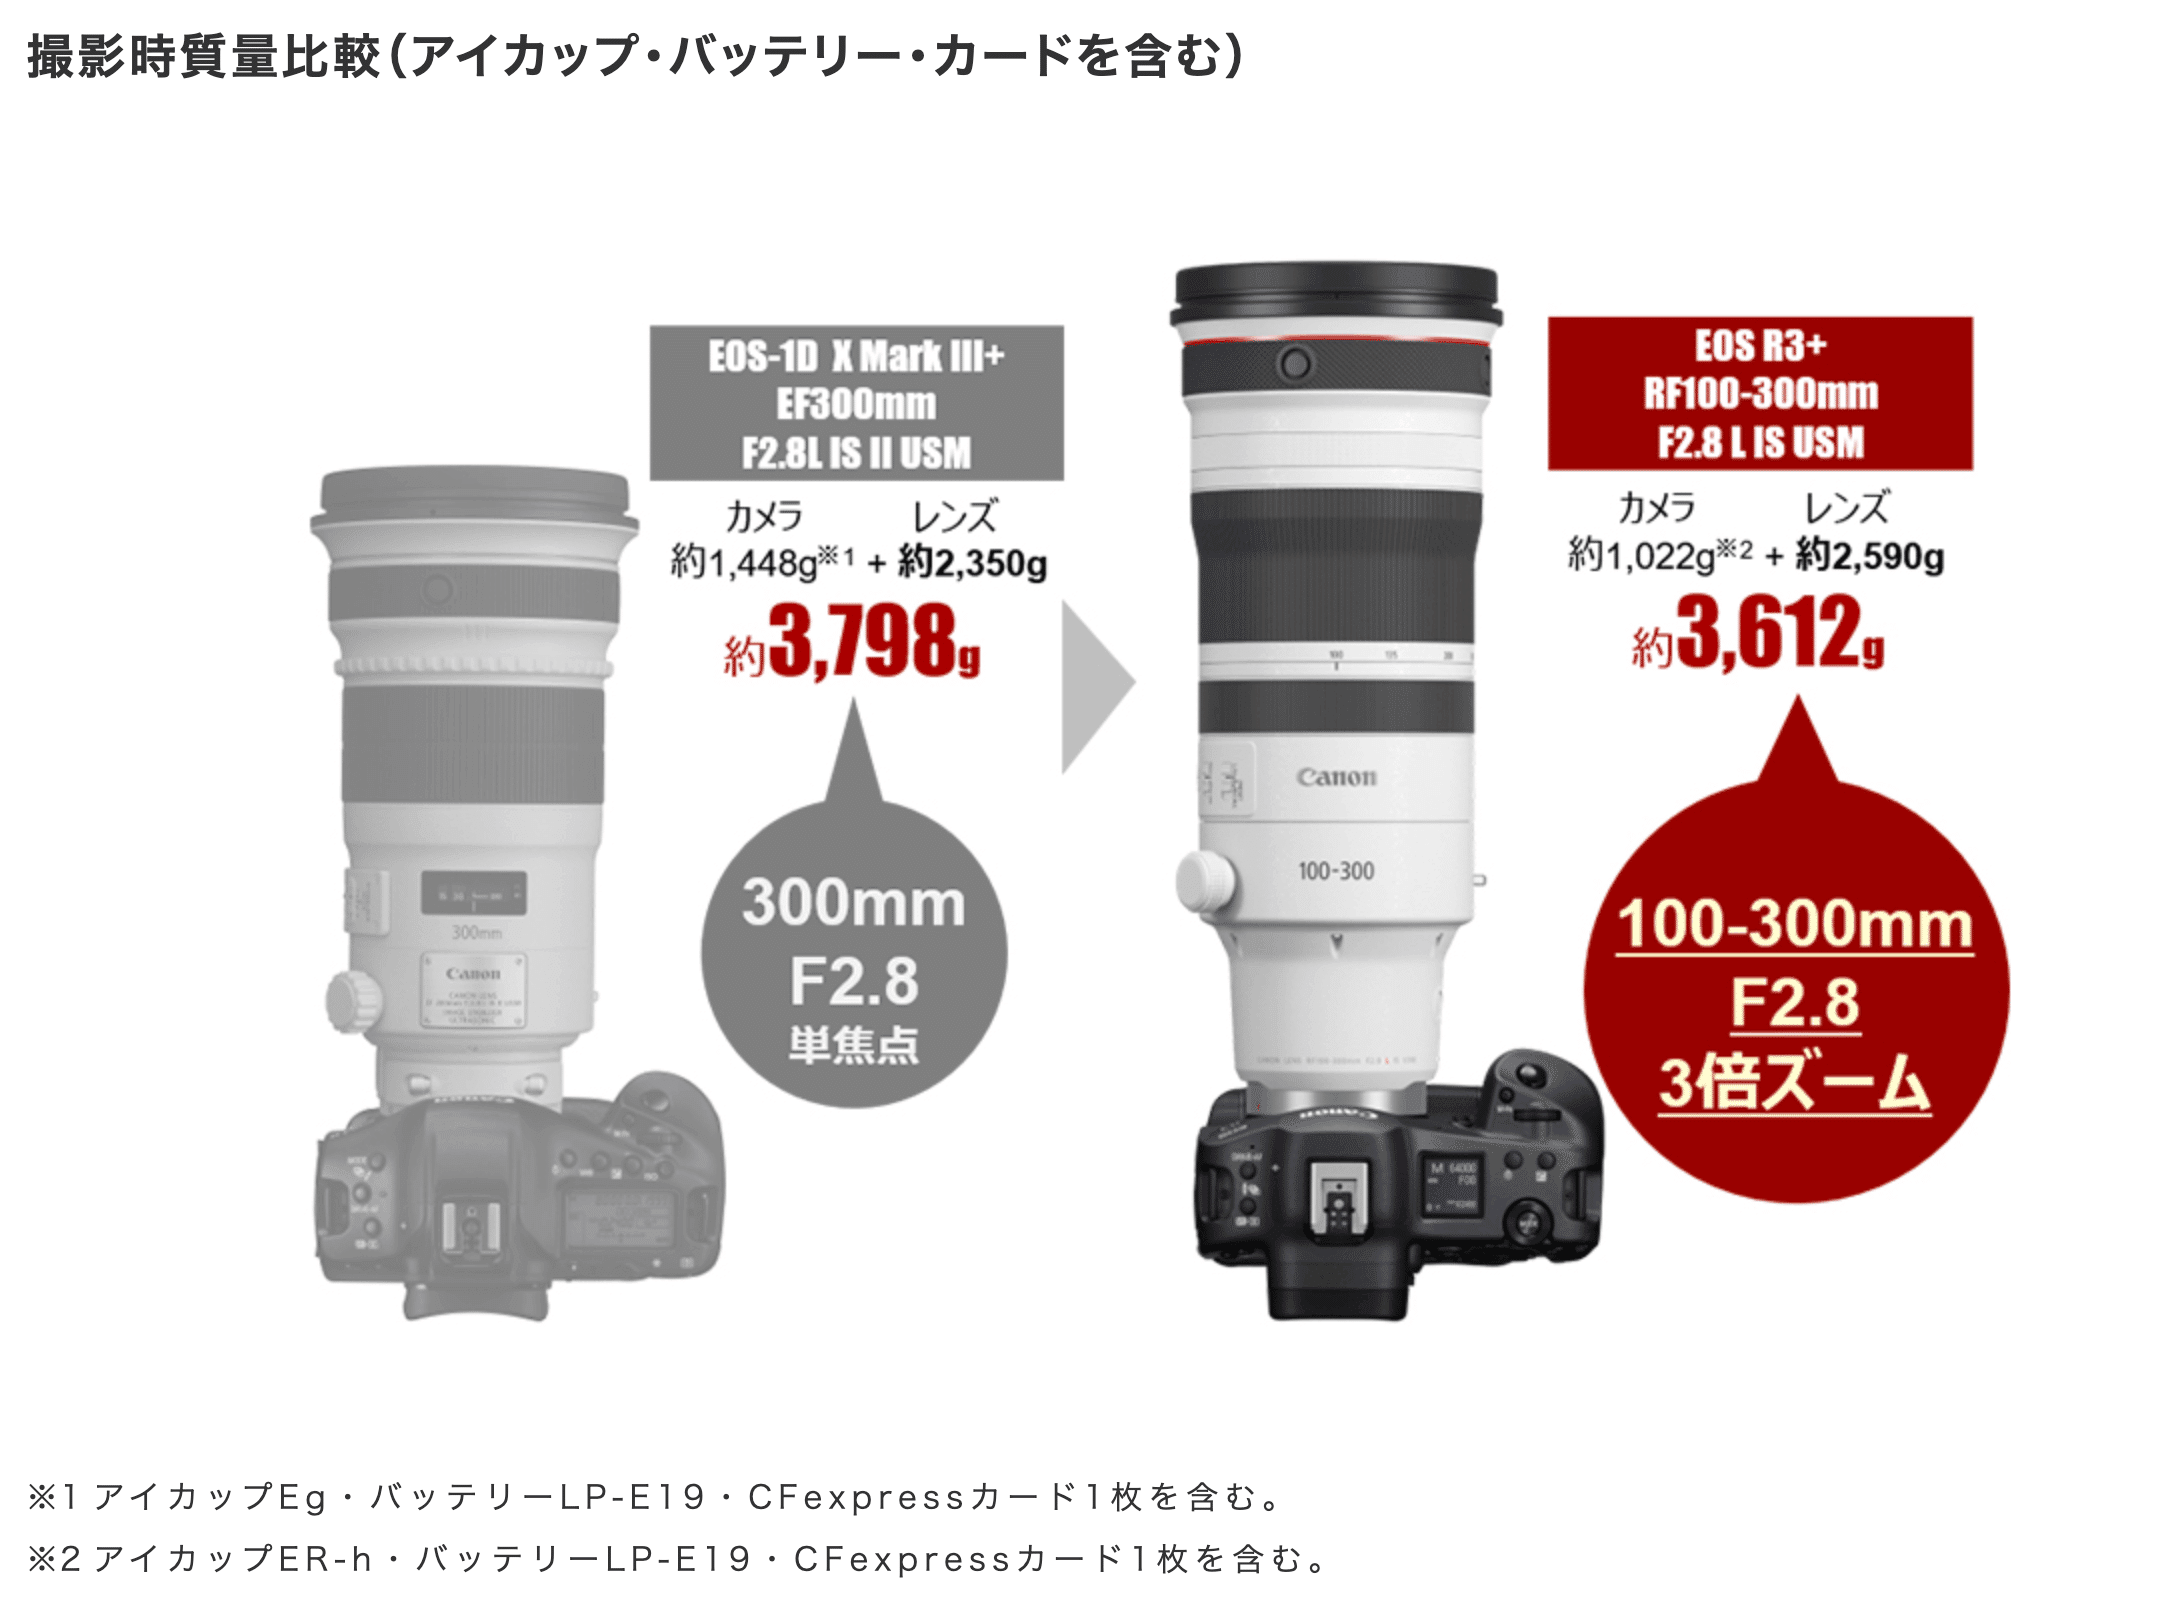 プロ高級単焦点レンズ CANON EF300mm F2.8L USM サンニッパ - レンズ(単焦点)